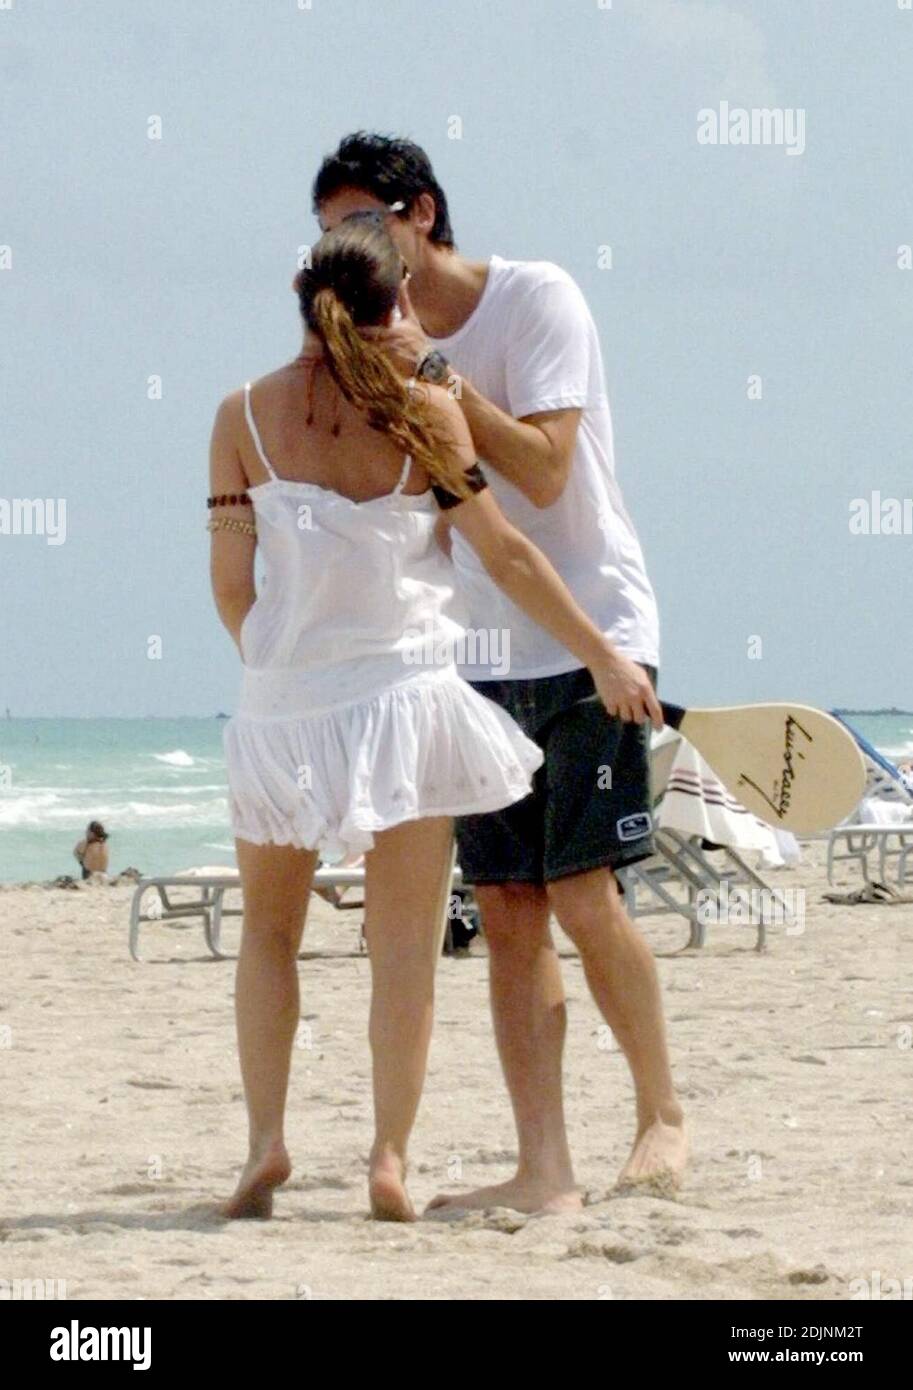 Adrien Brody y su nueva novia la actriz española Elsa Pataky juegan al remo y alisa en Miami Beach, 8/9/06 Foto de stock